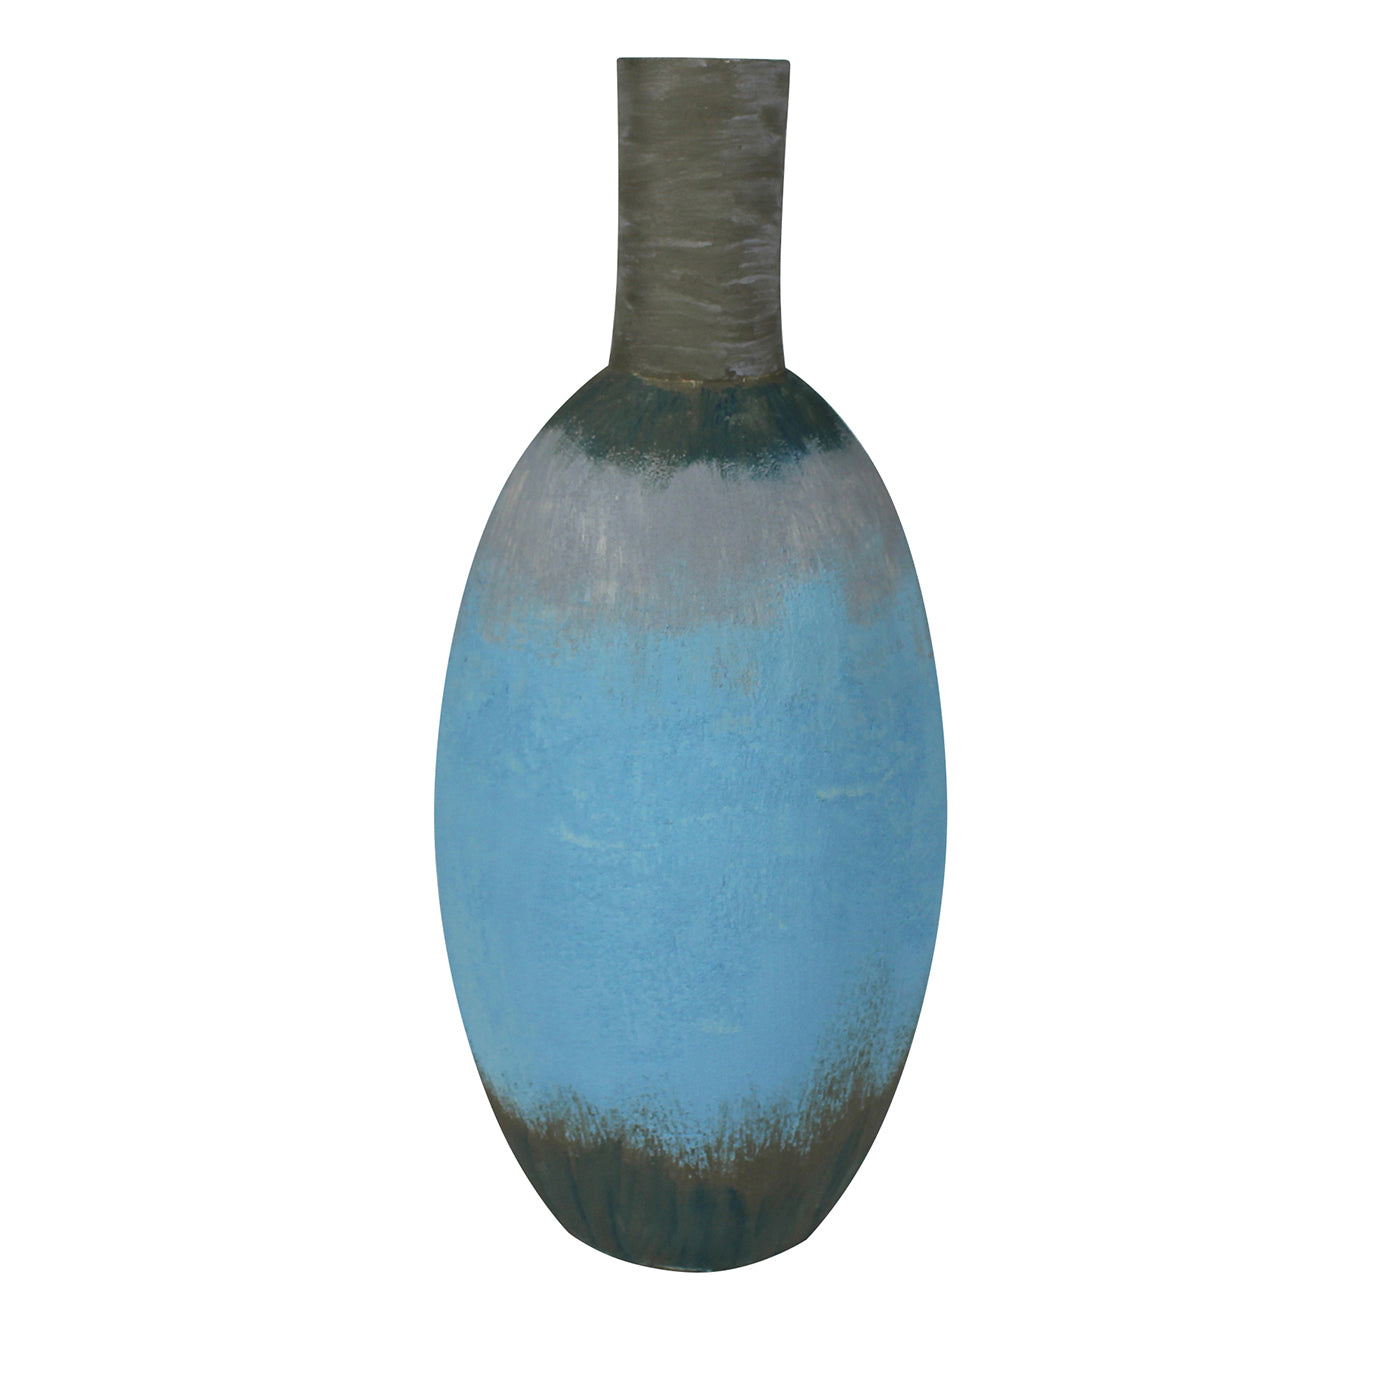 Vaso bulboso azzurro, grigio e verde 13 di Mascia Meccani - Vista principale